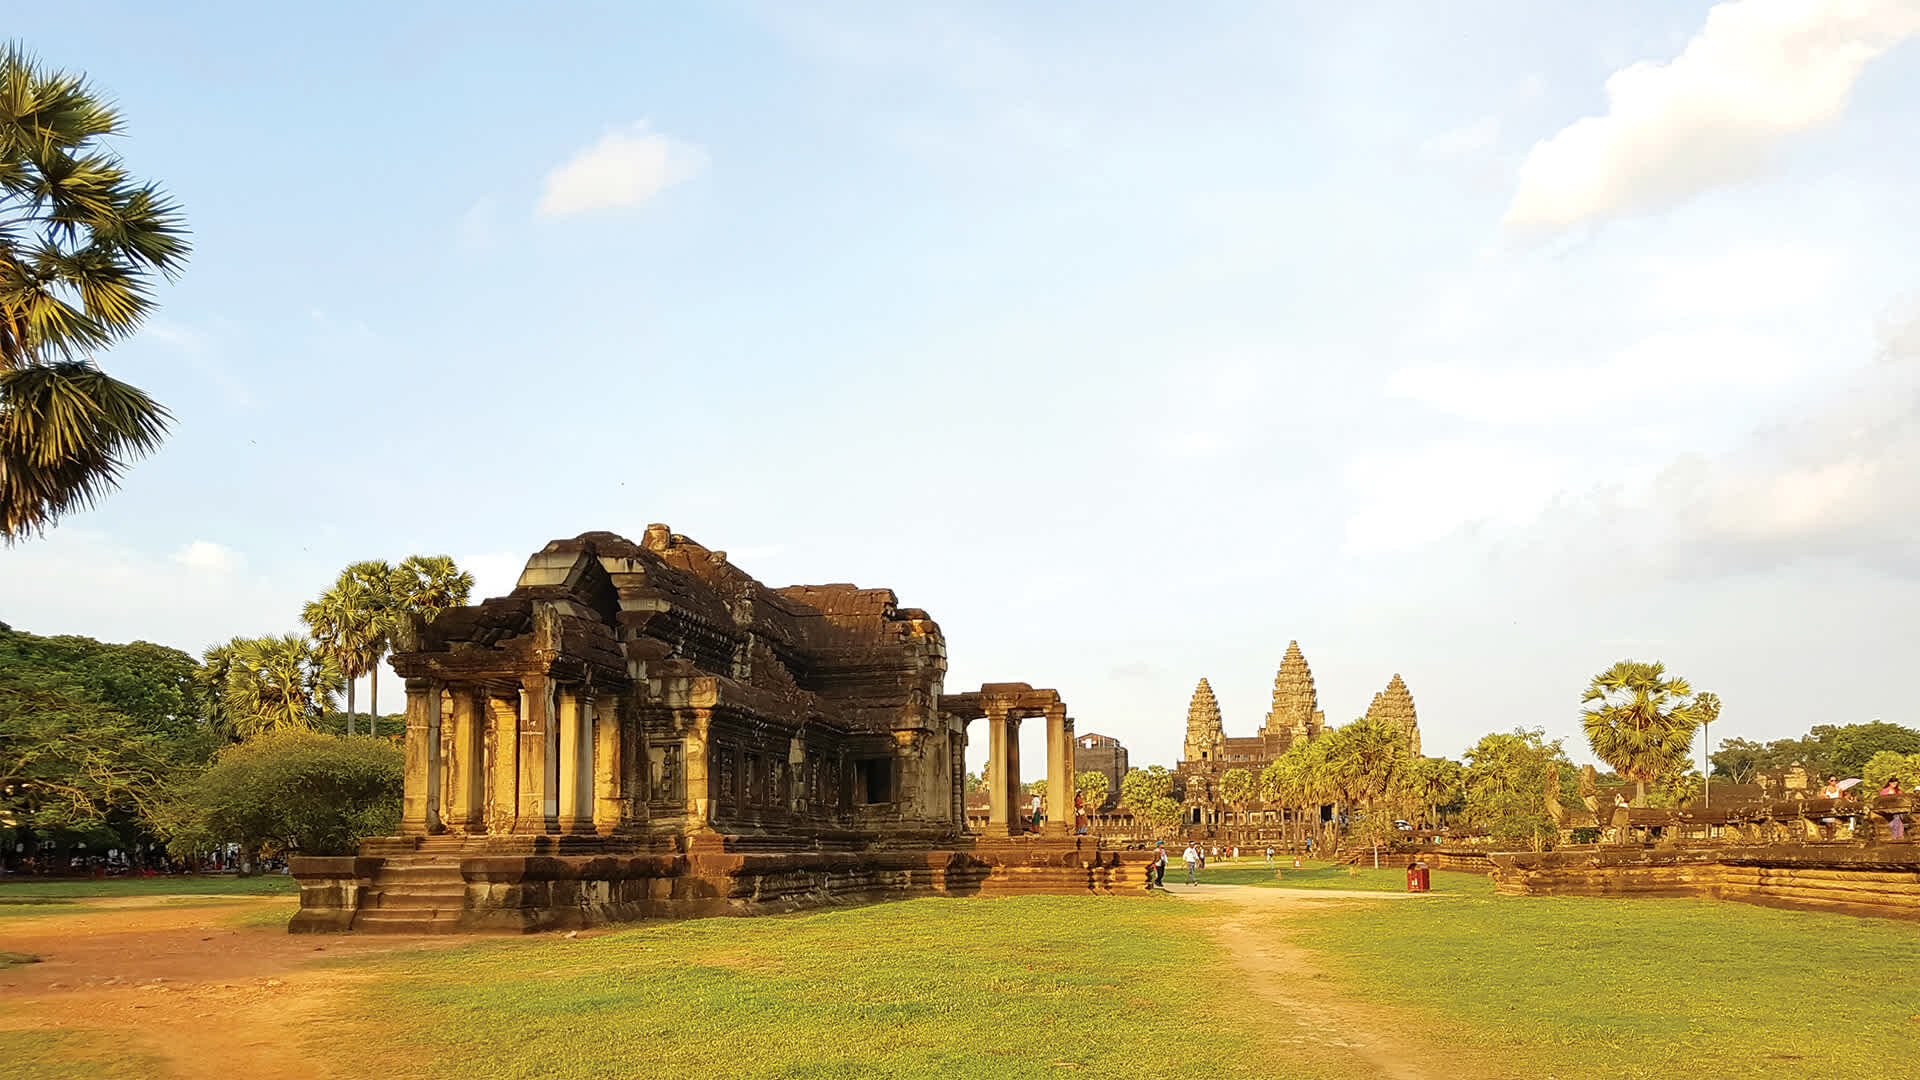 North Library at Angkor Wat.